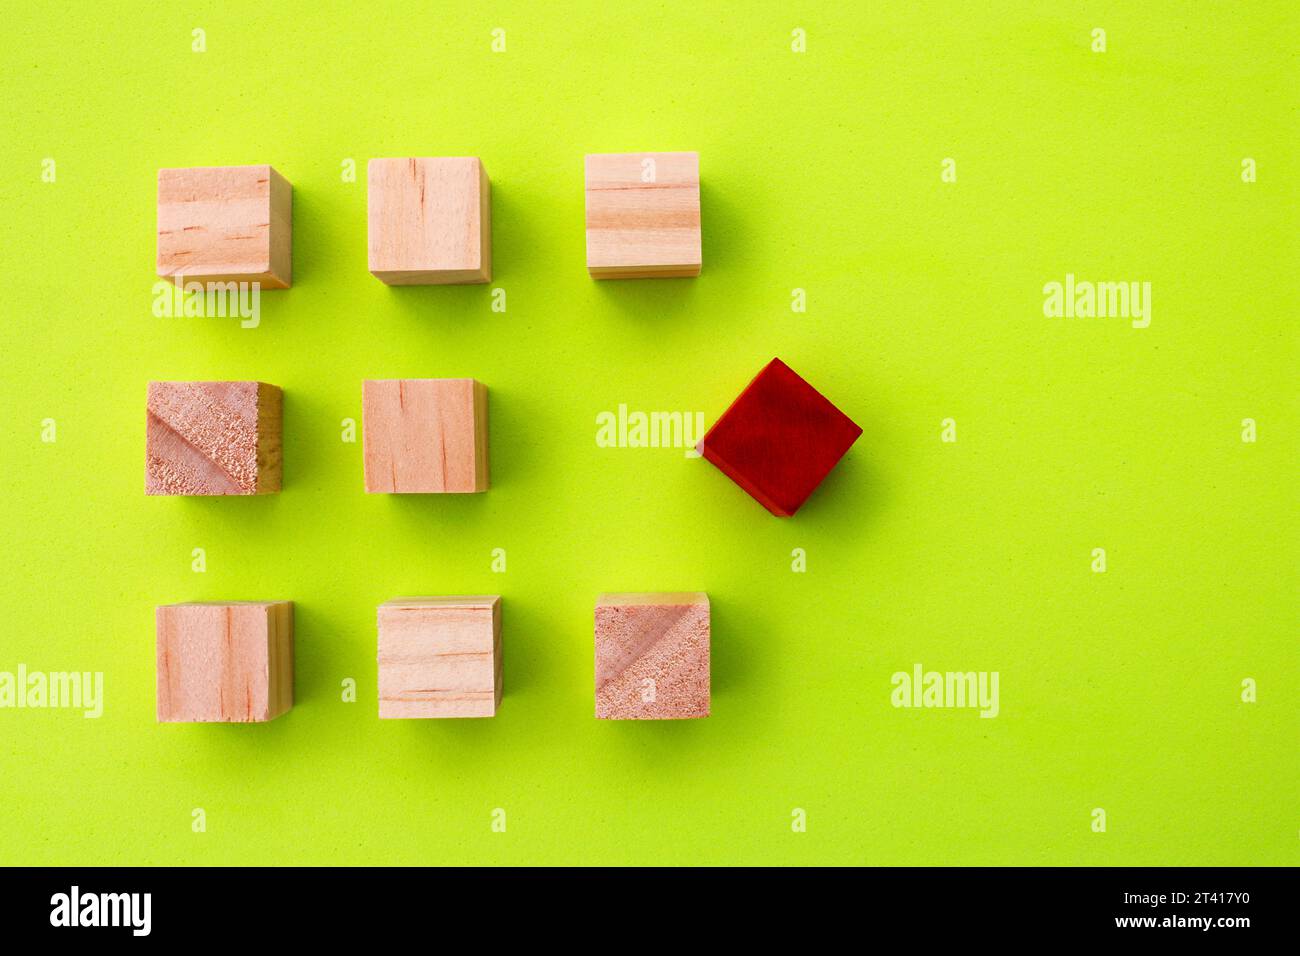 Cube en bois rouge qui diffère du reste des cubes alignés Banque D'Images